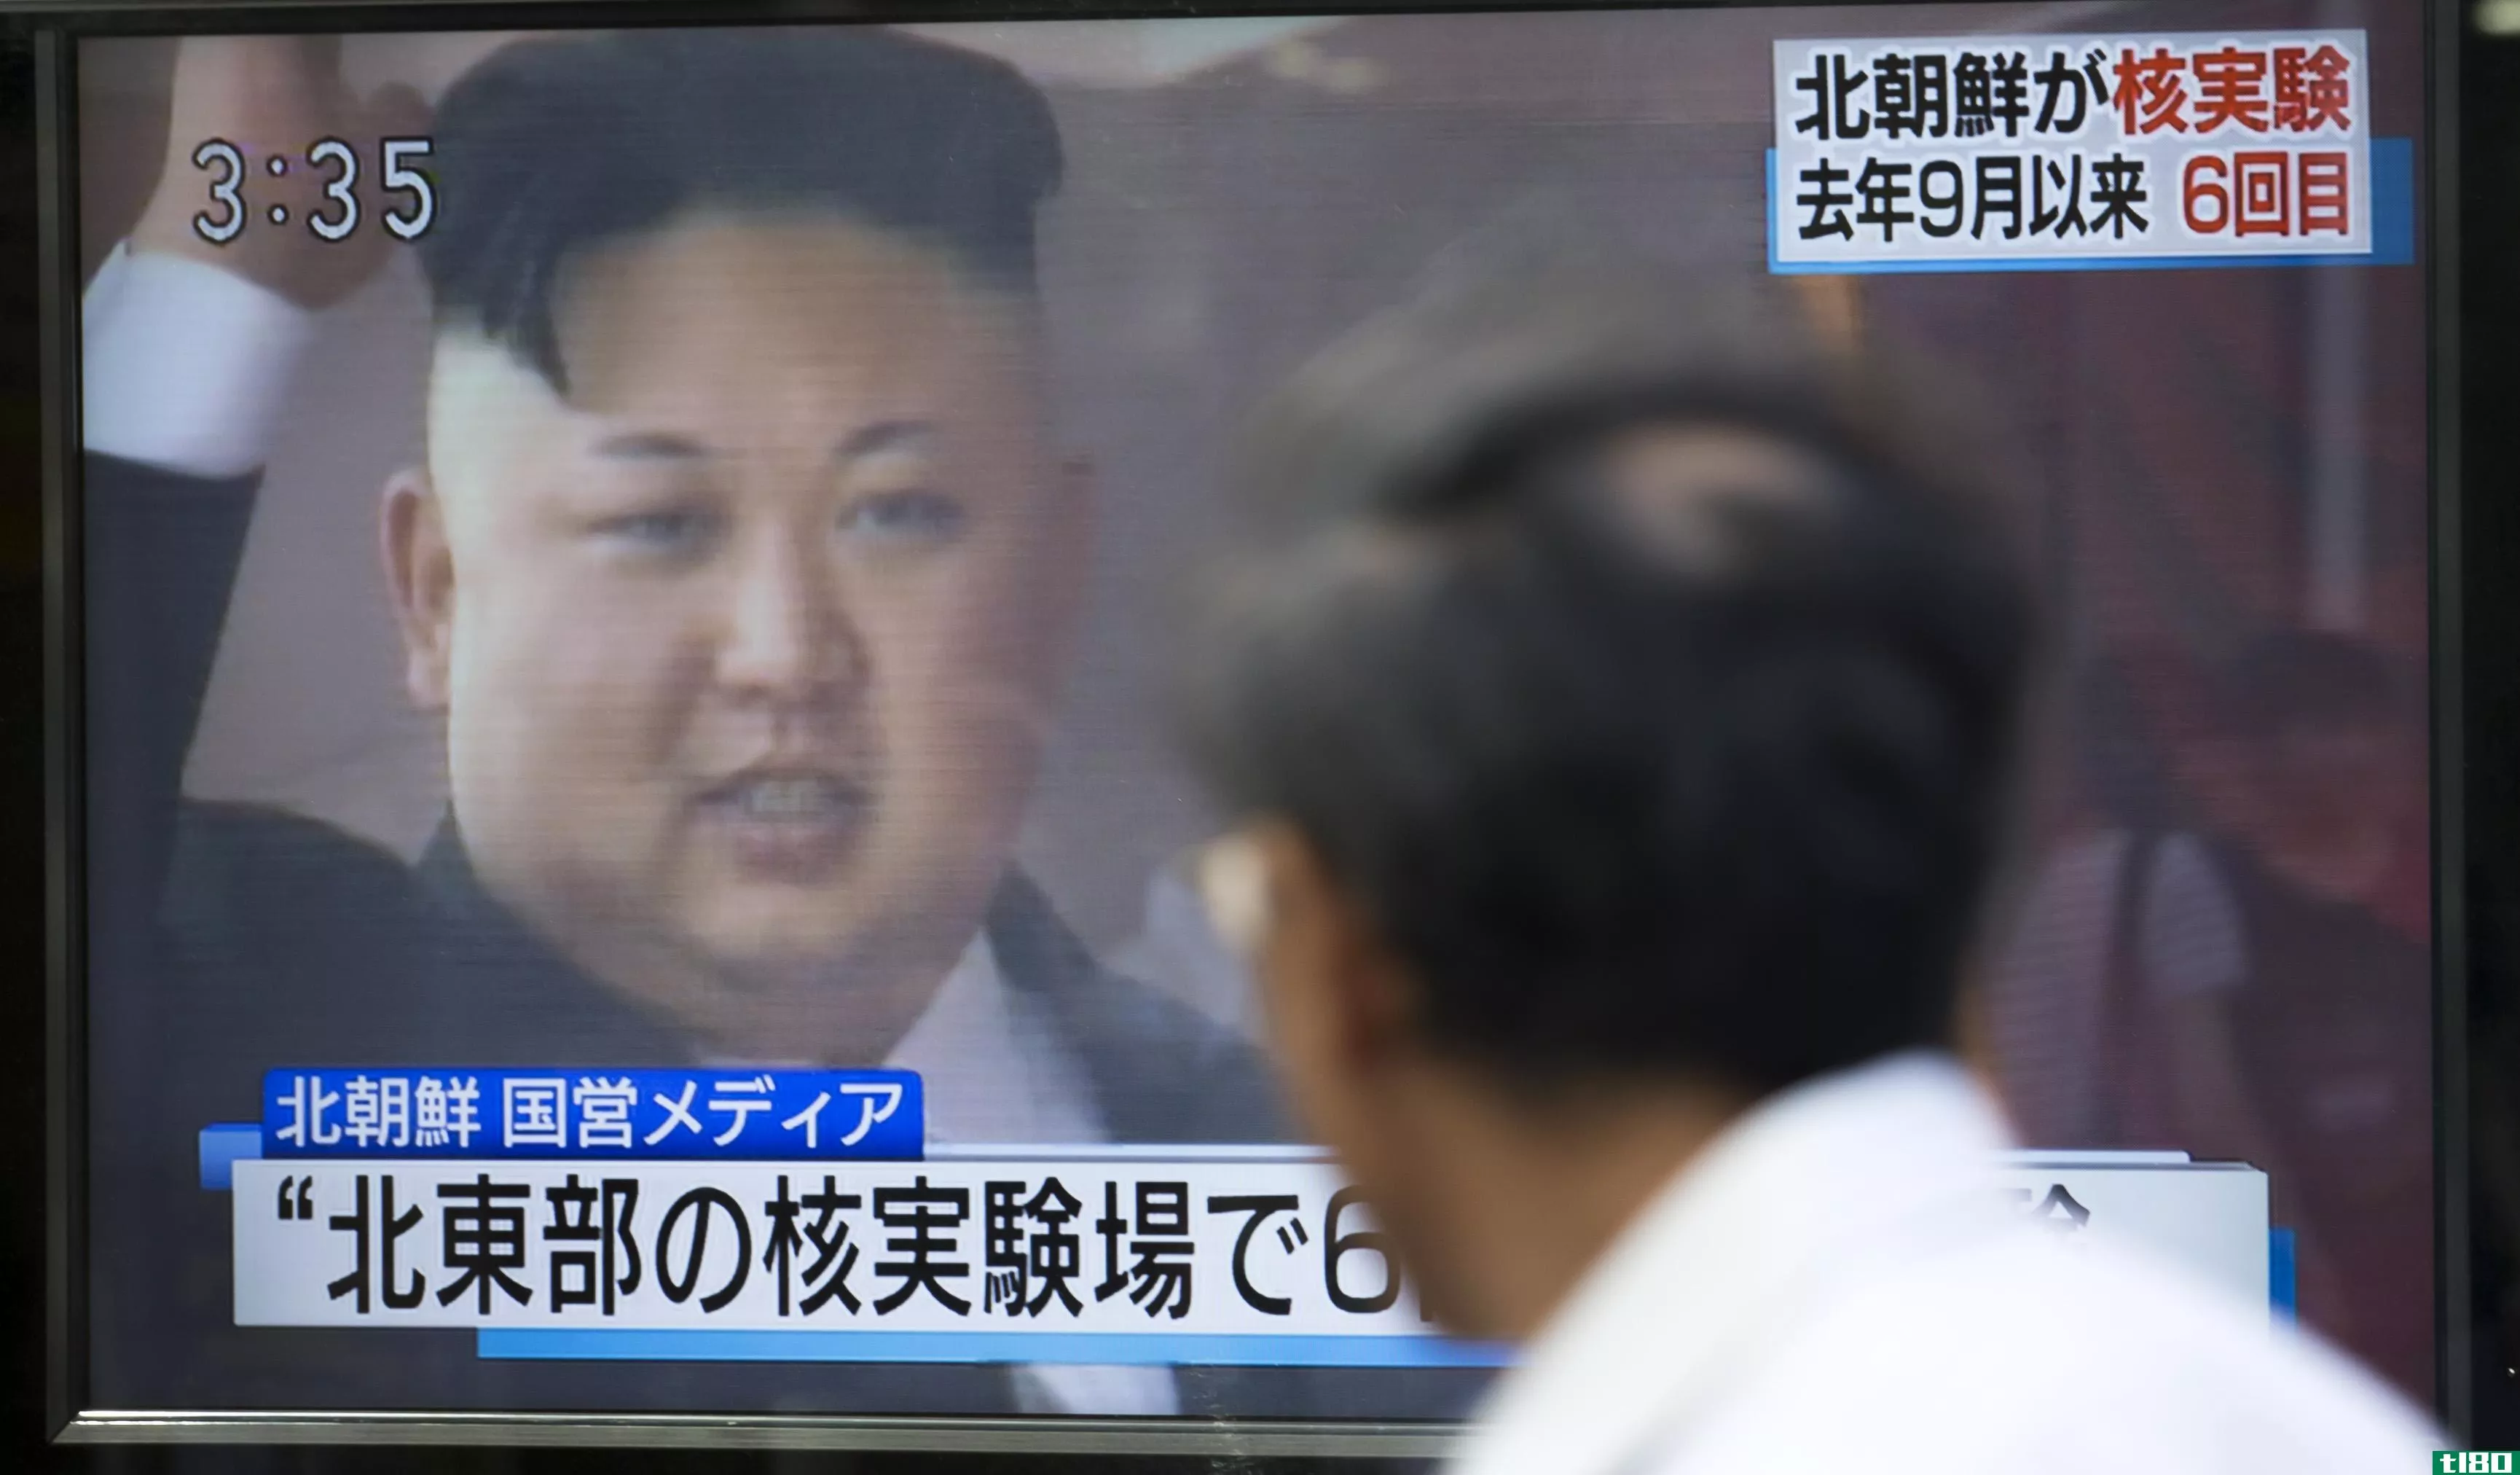 朝鲜声称试验了氢弹